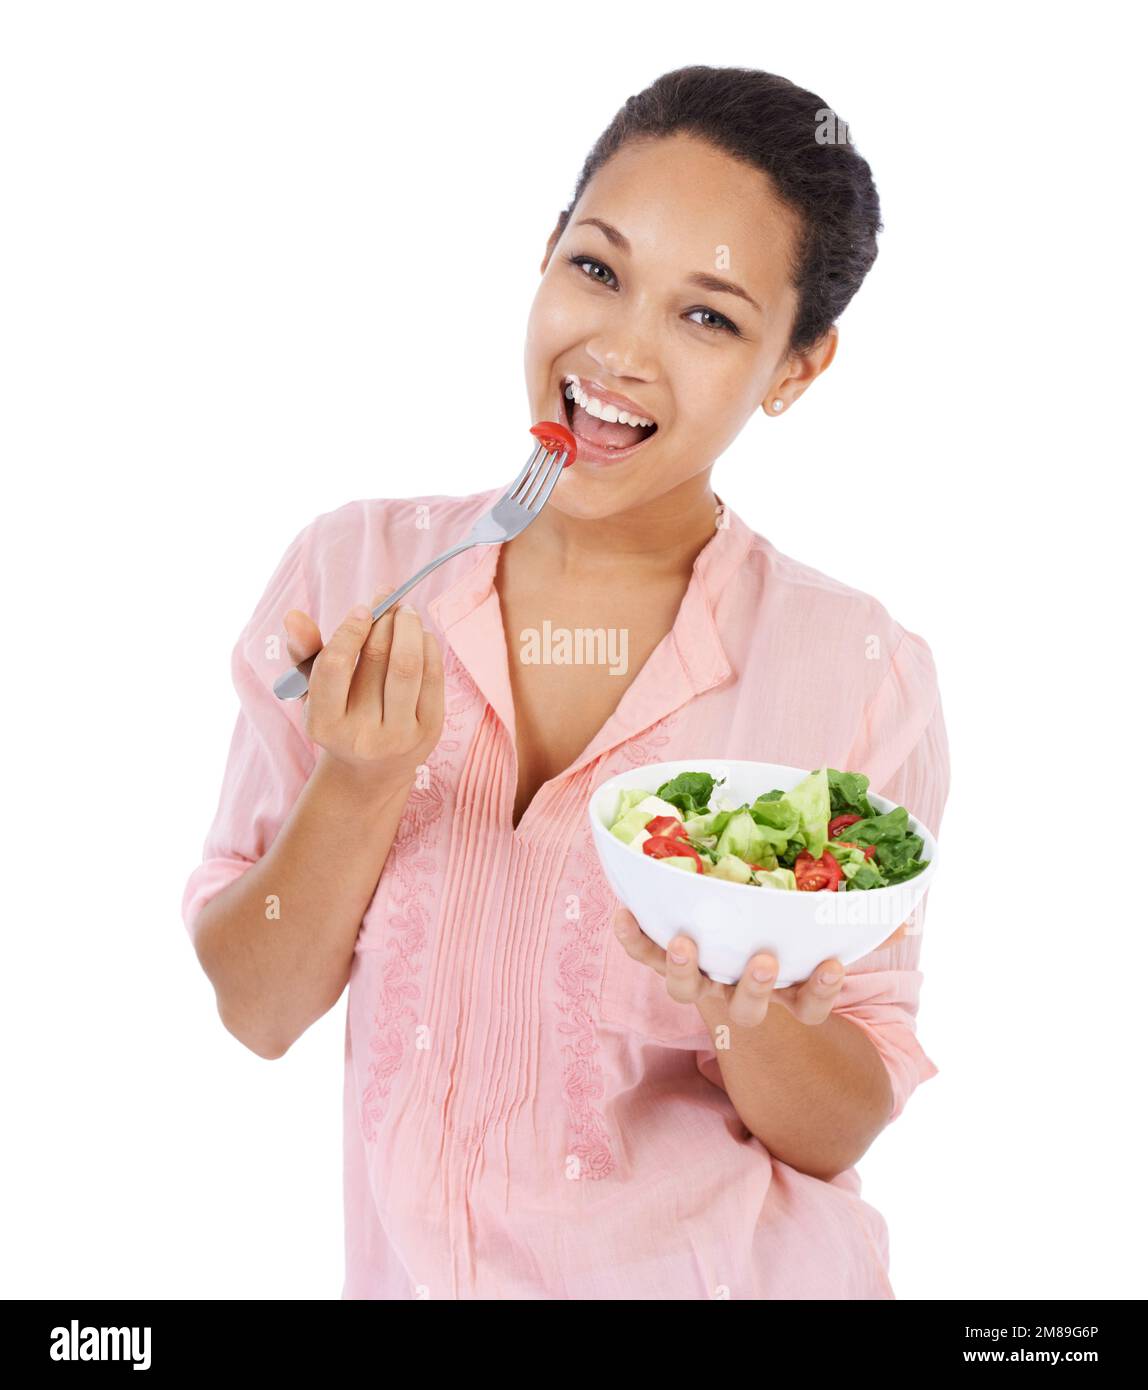 Un repas délicieux et sain. Jeune femme souriant tout en mangeant une salade verte fraîche. Banque D'Images